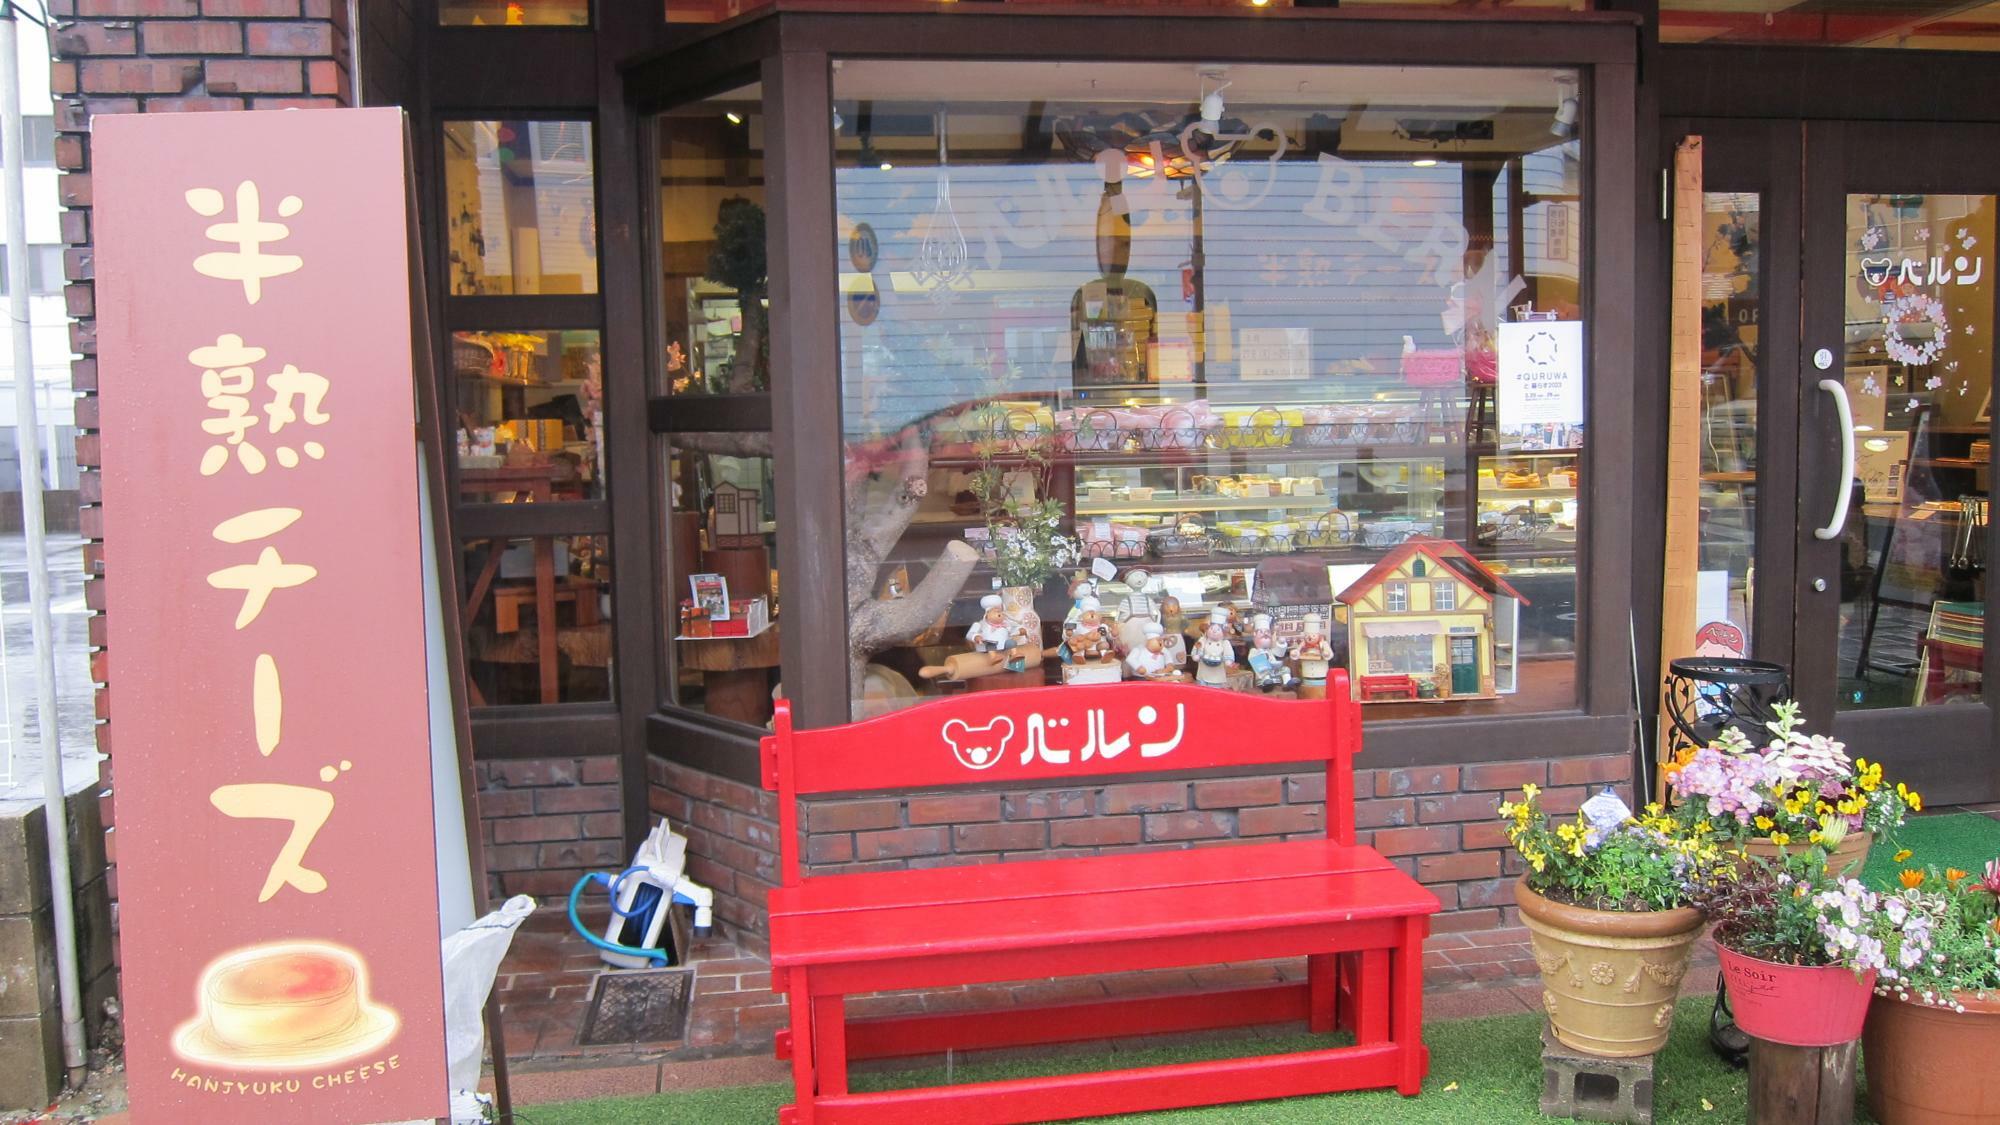 ベルンといえば、いつも置いてあるこの赤いベンチが目印